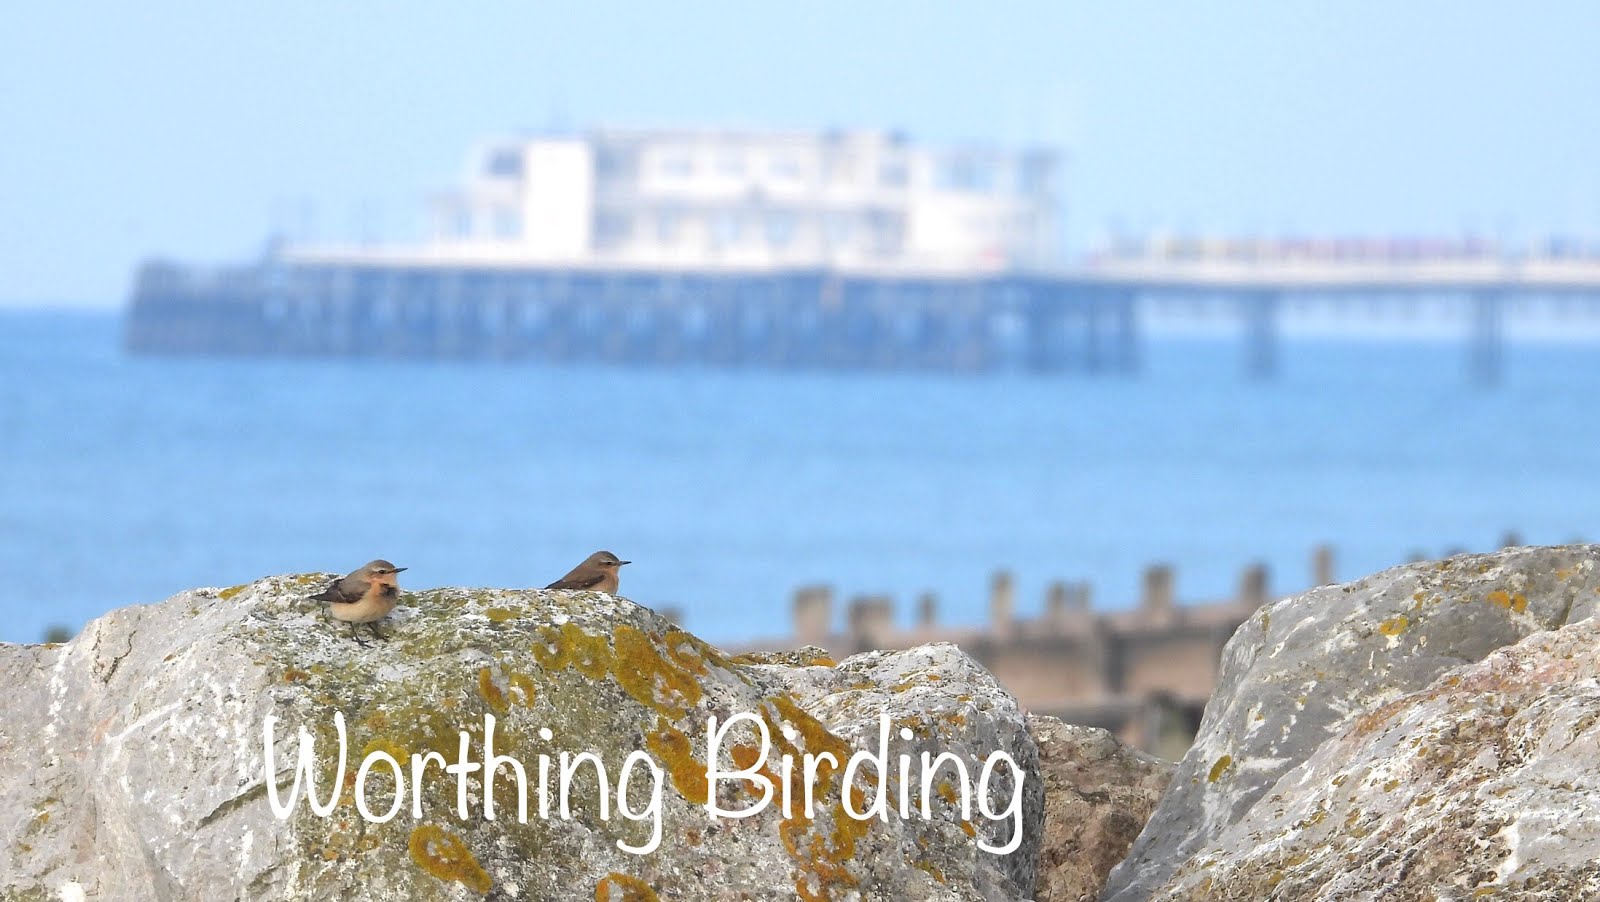 Worthing Birding and Wildlife